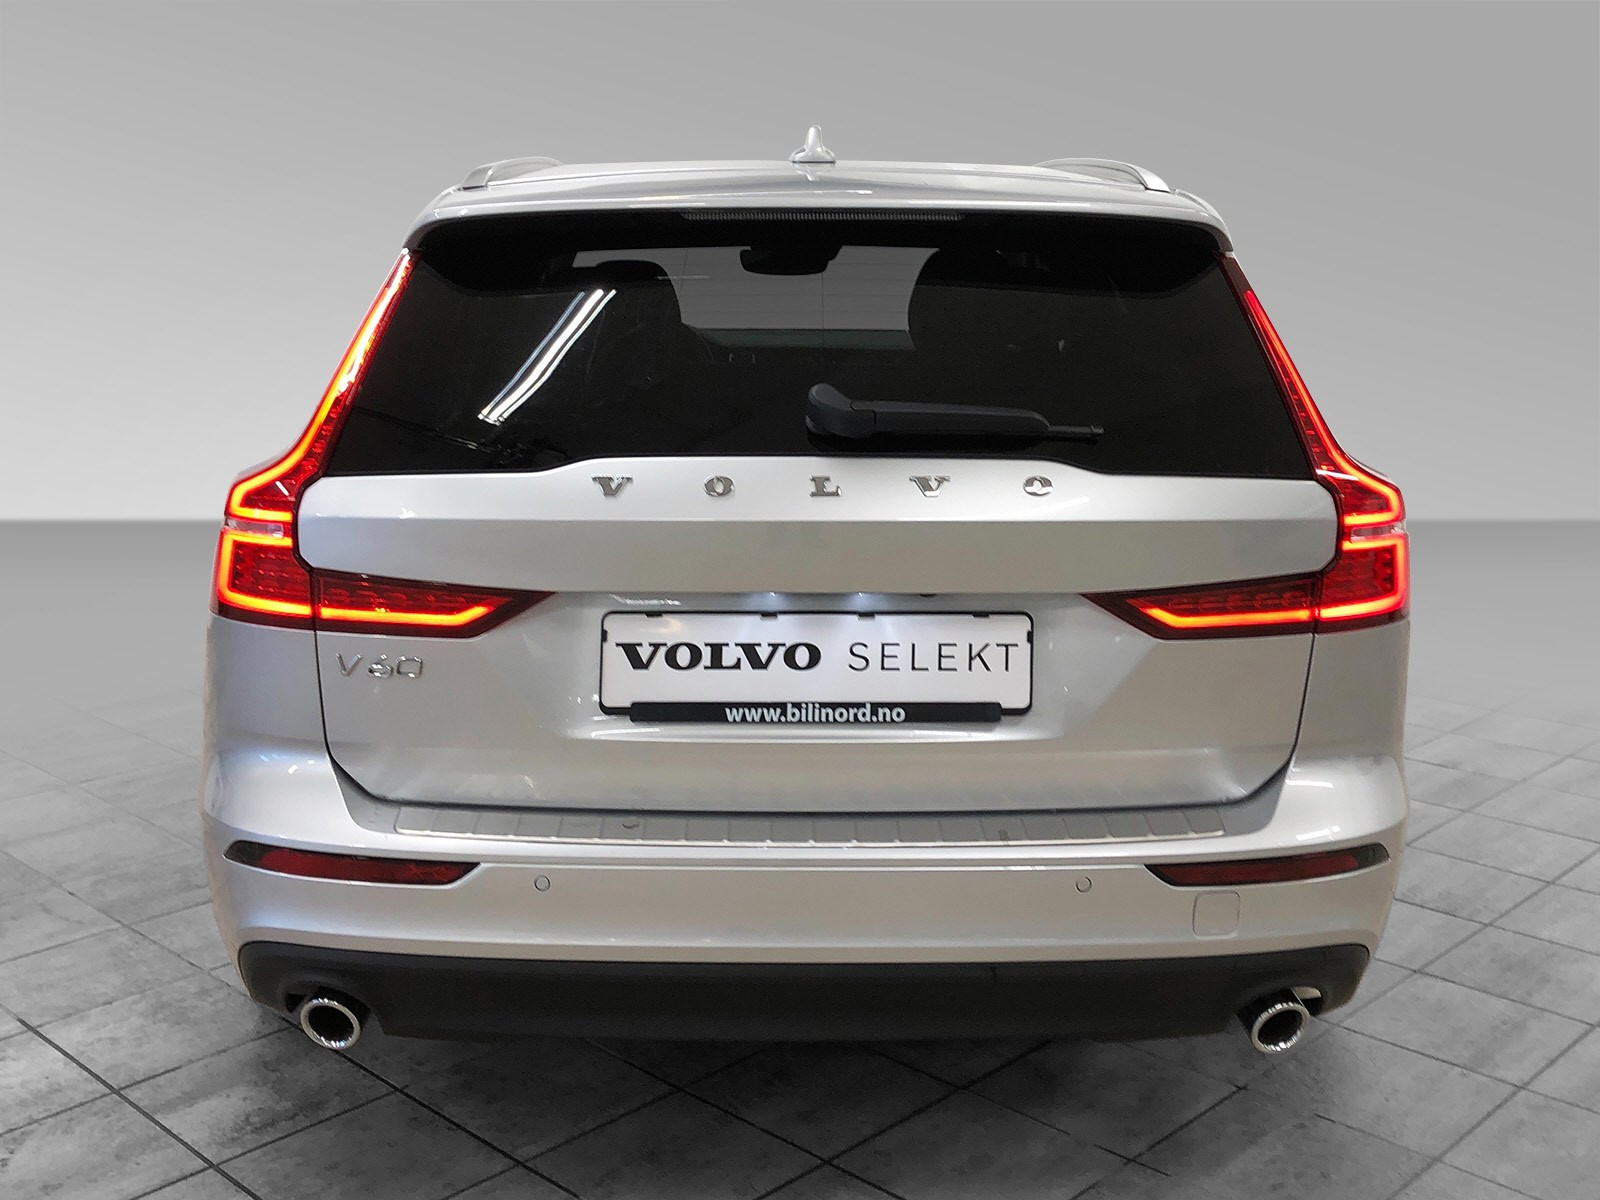 Volvo Selekt er det trygge valget på bruktbil